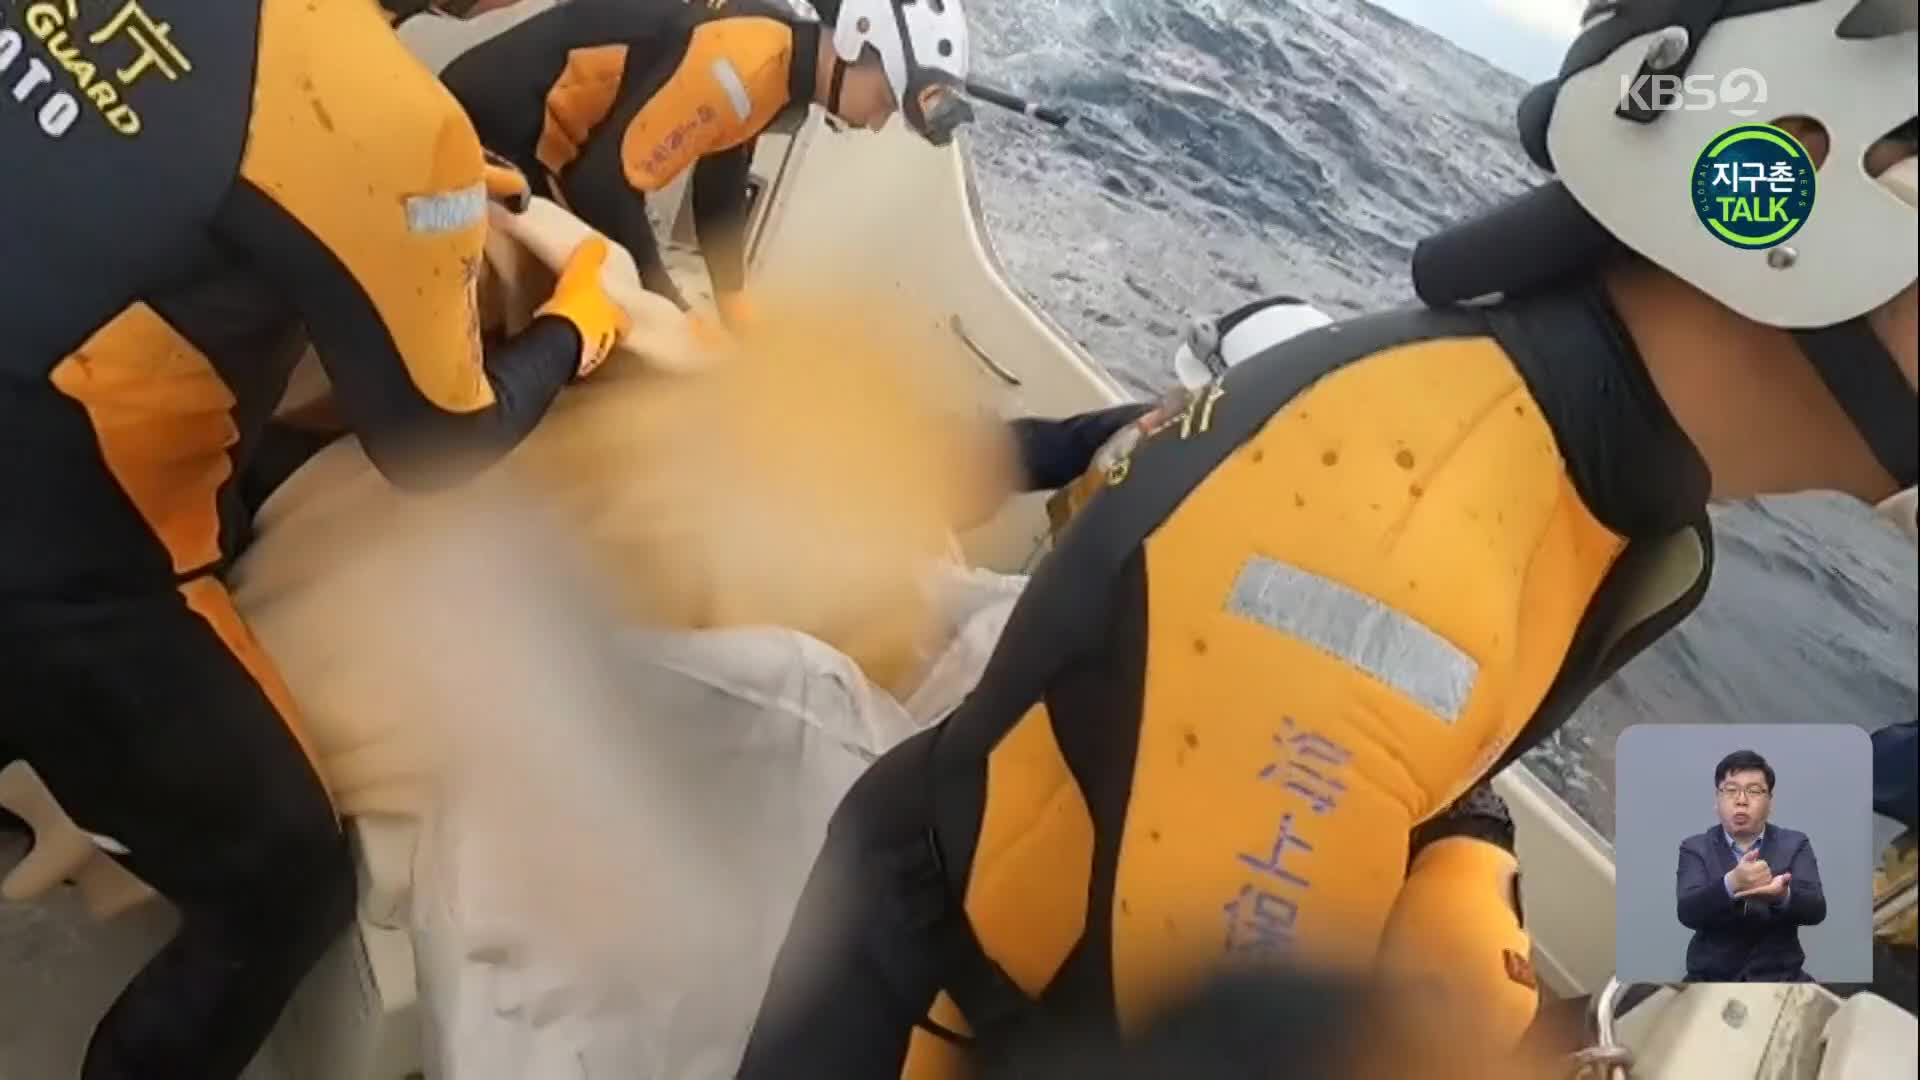 [지구촌 Talk] 일본, 22시간 동안 바다 표류하던 남성 구조